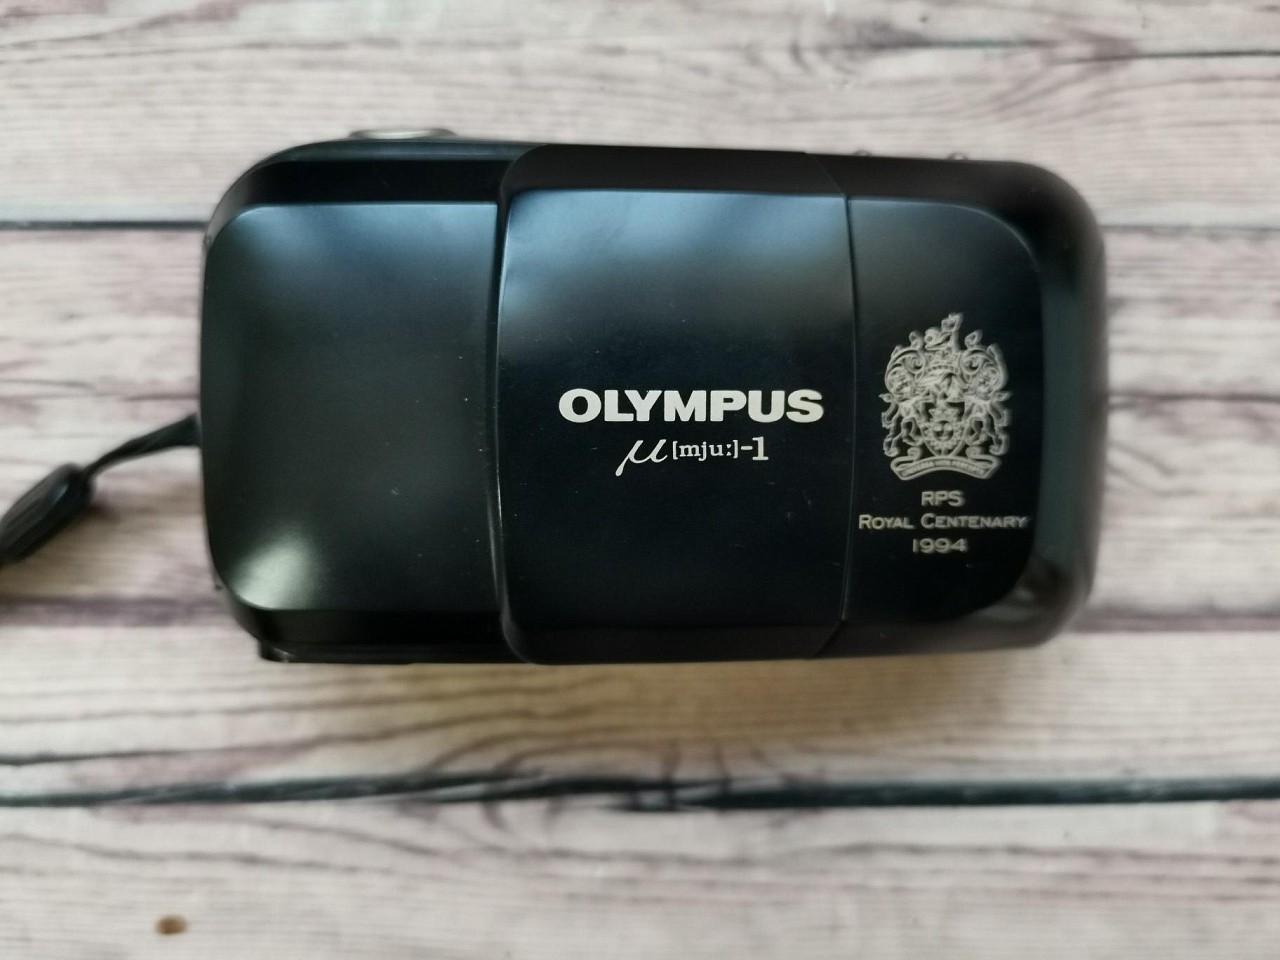 Olympus mju-1 / Stylus RPS  фото №1